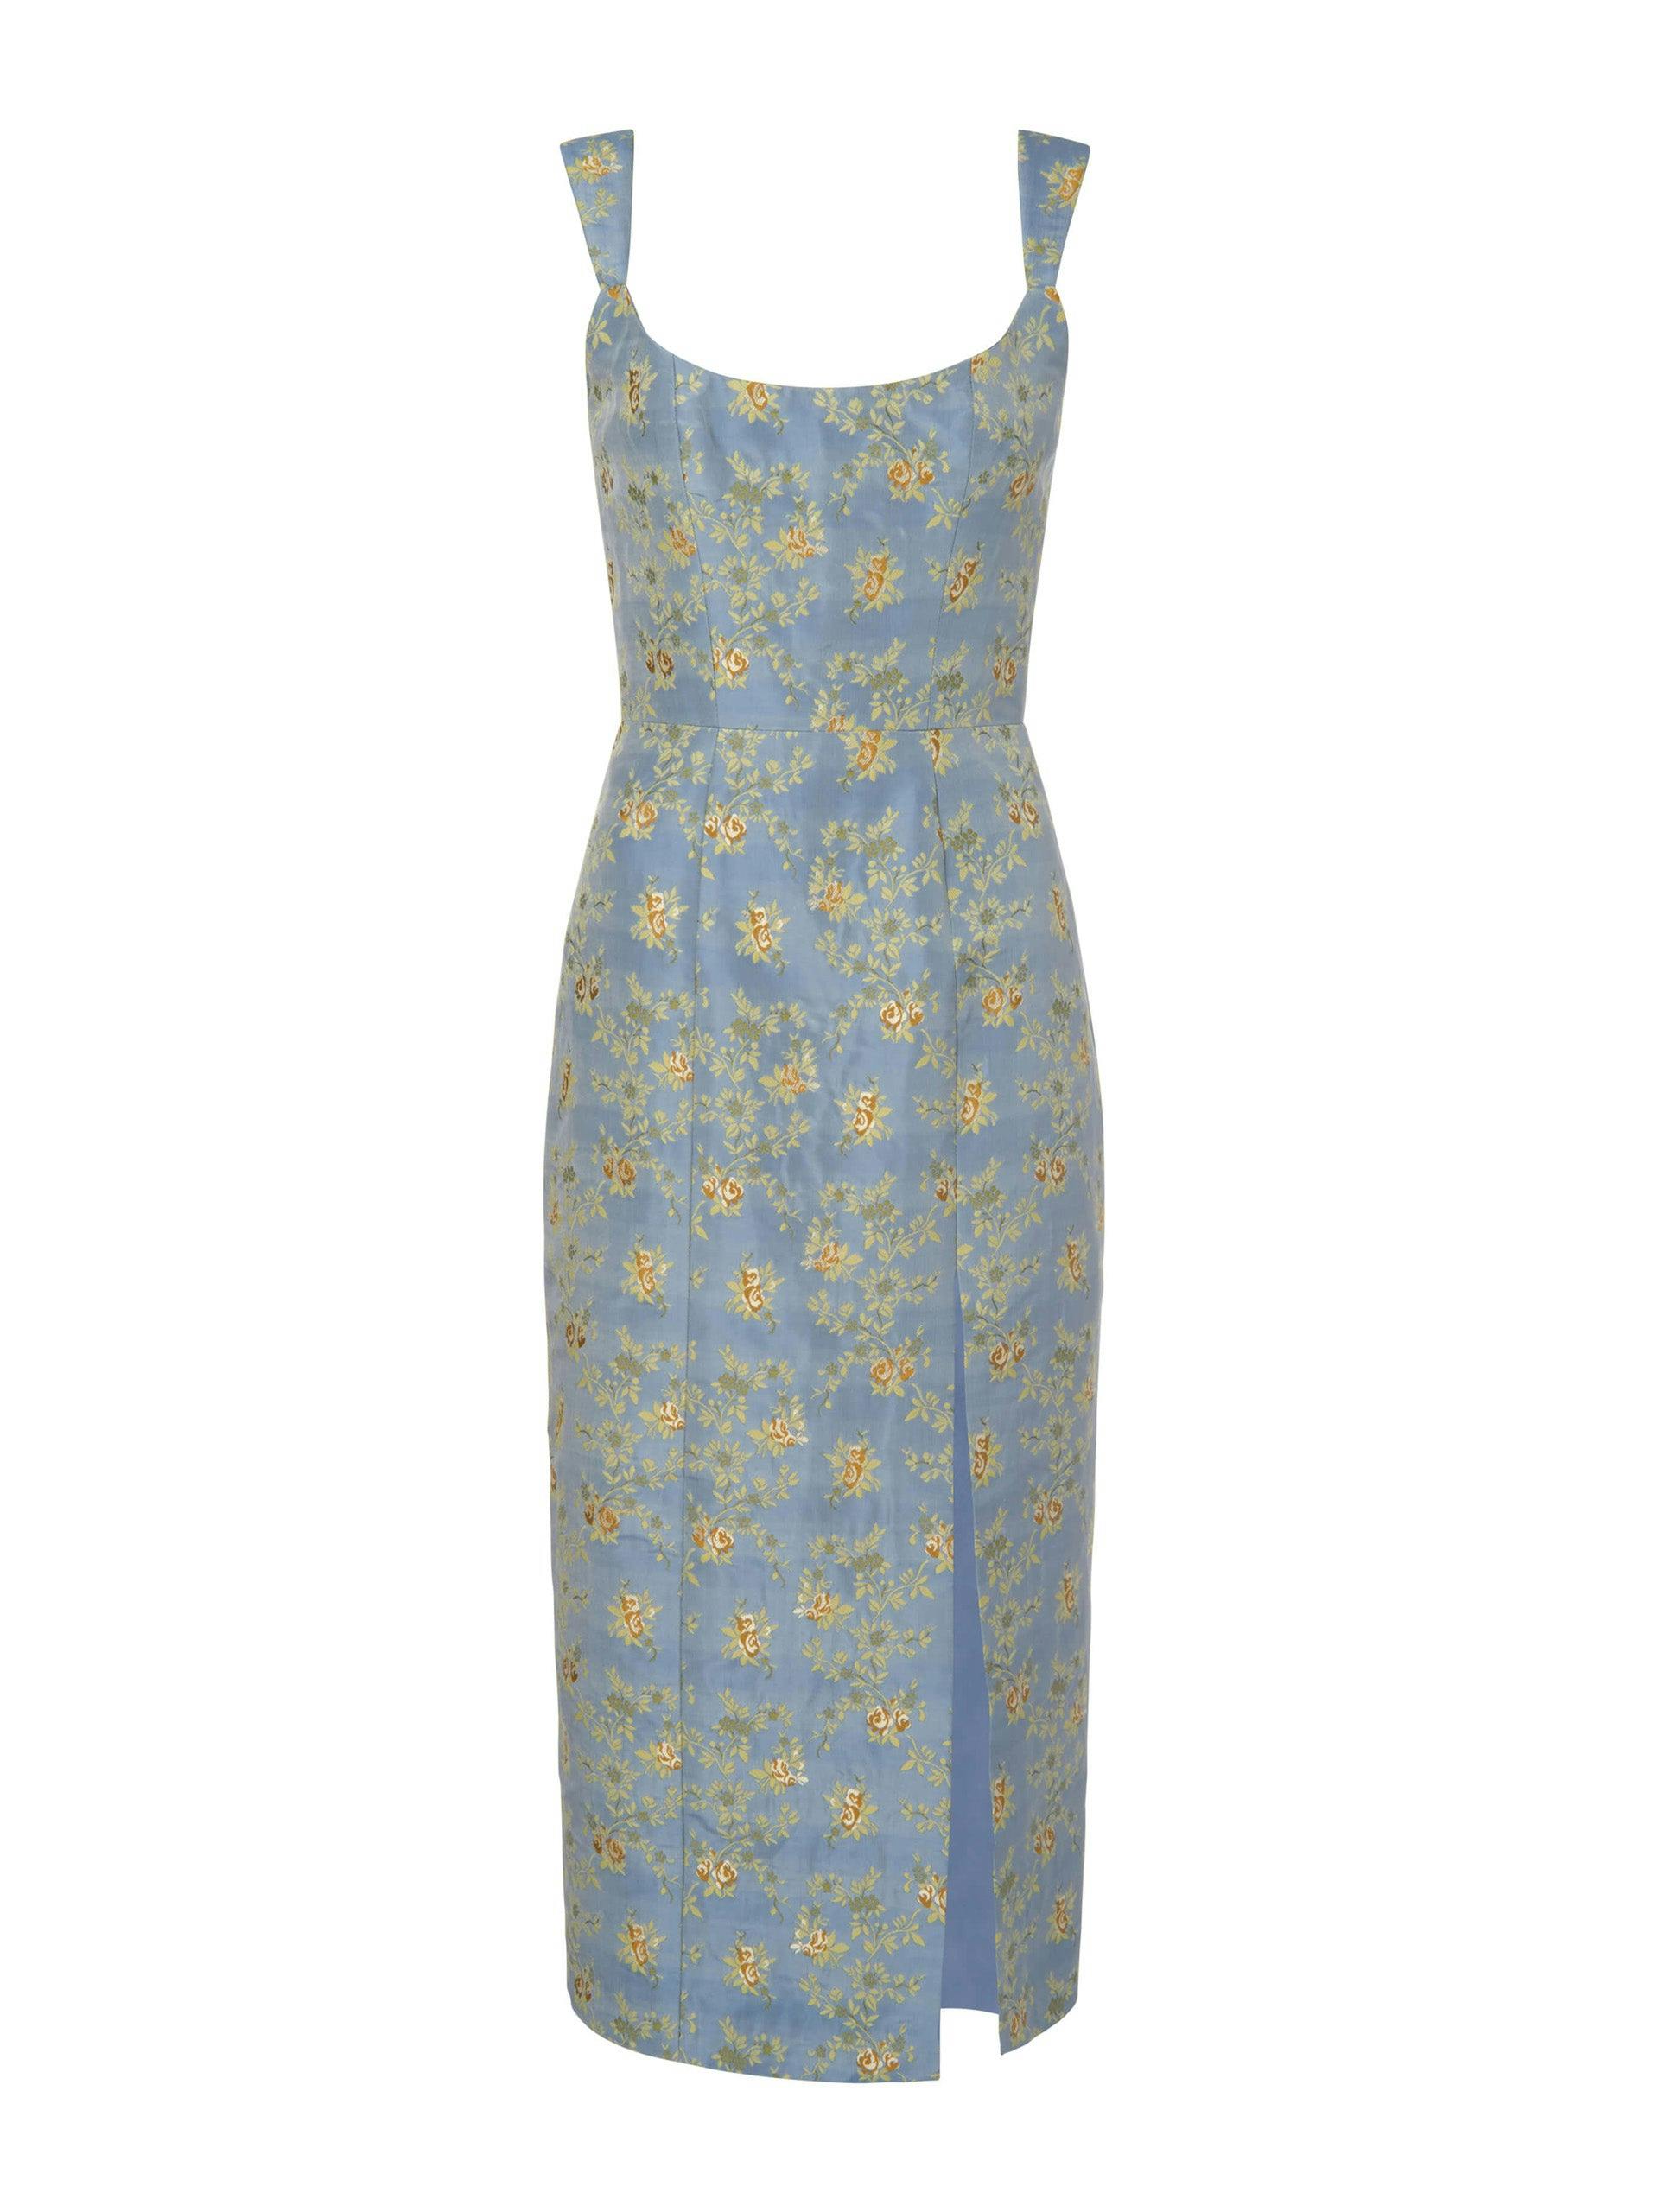 Claudette blue floral brocade corset dress